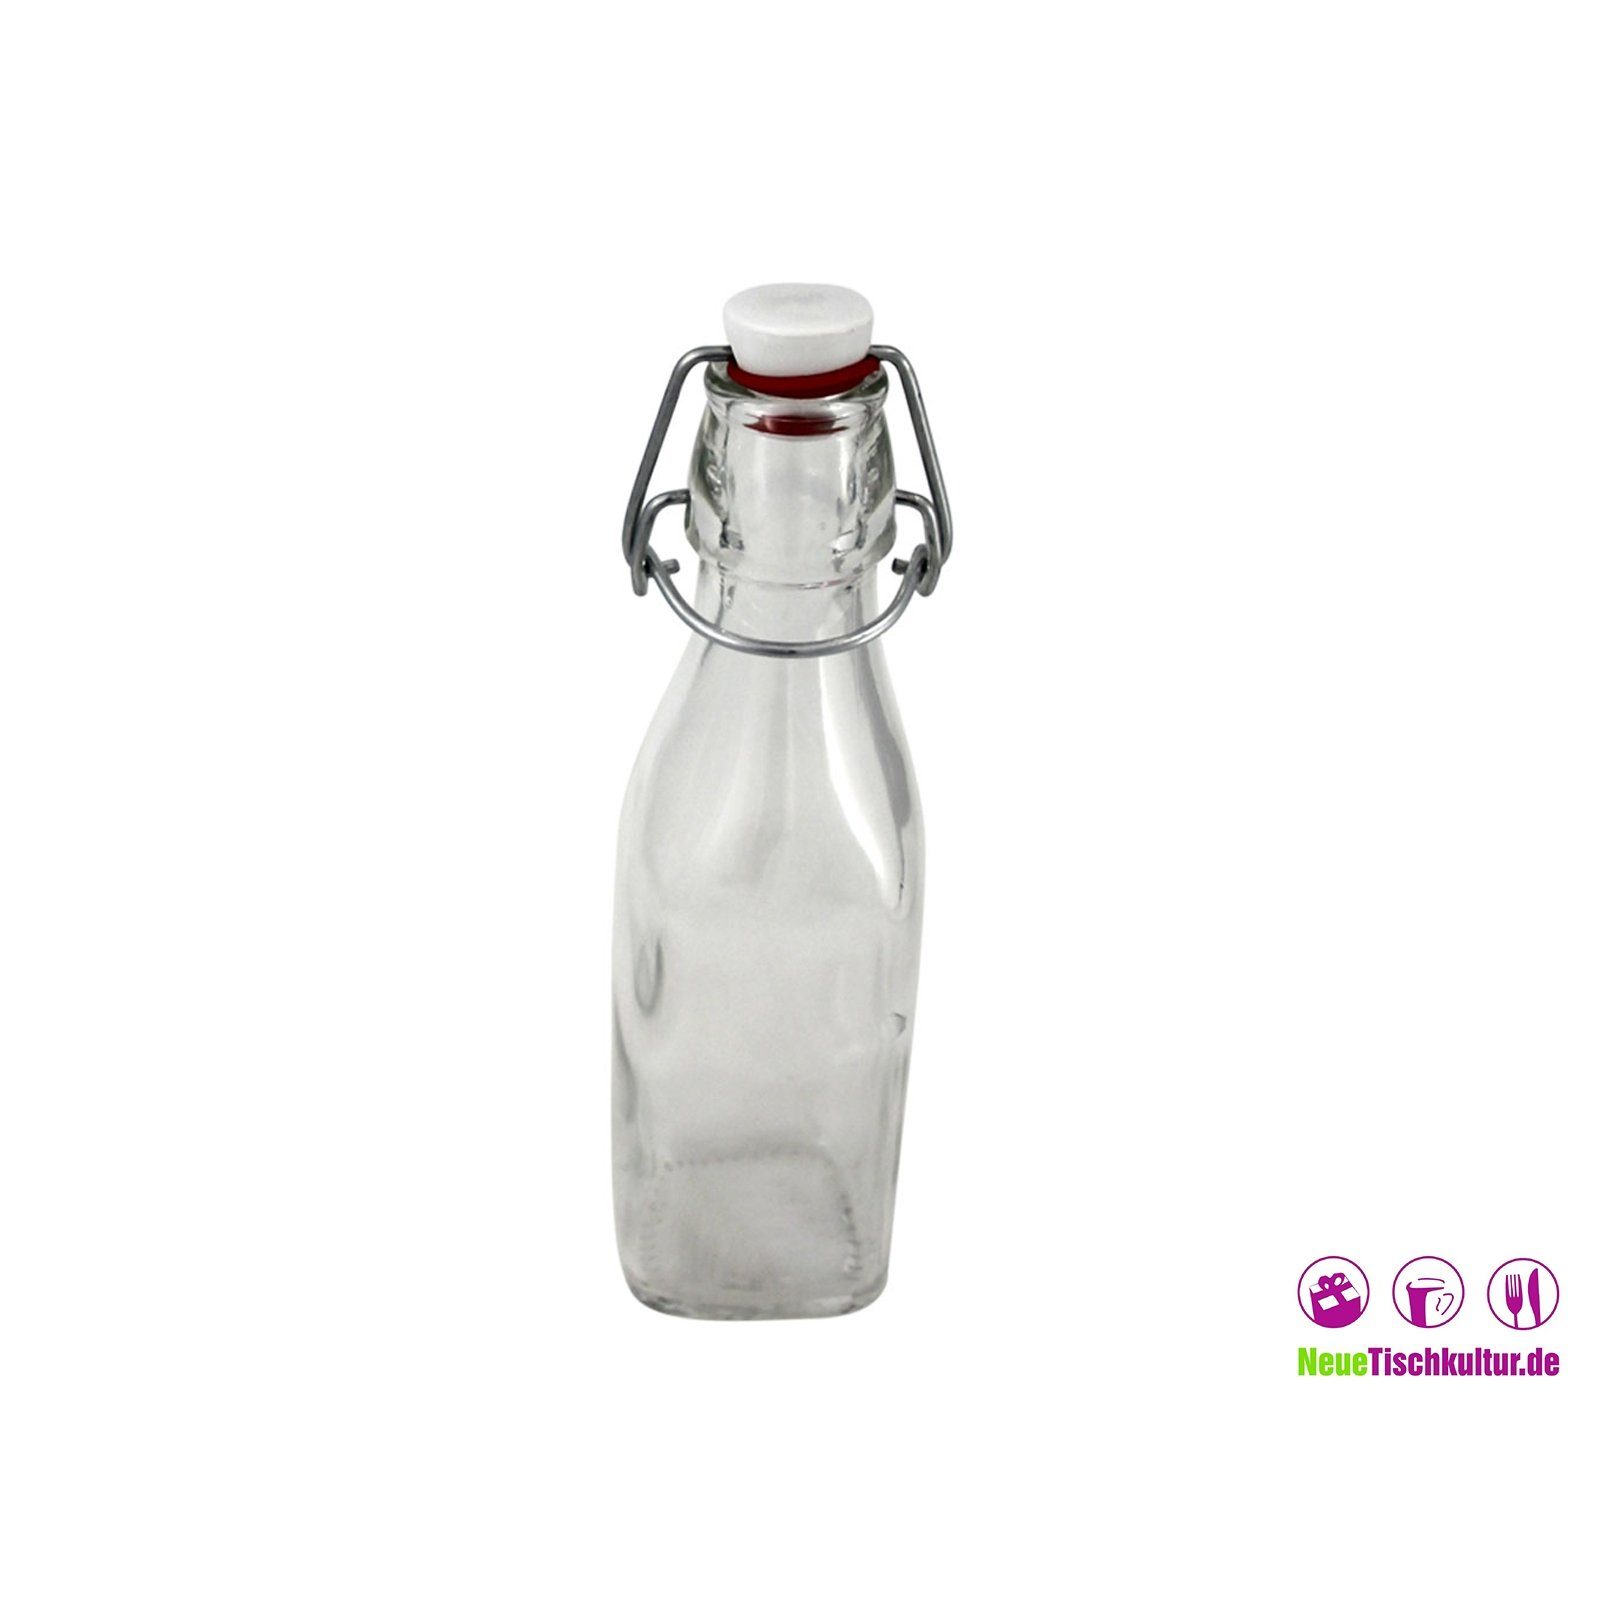 Neuetischkultur Vorratsglas Glasflasche Bügelverschluss, Glas mit